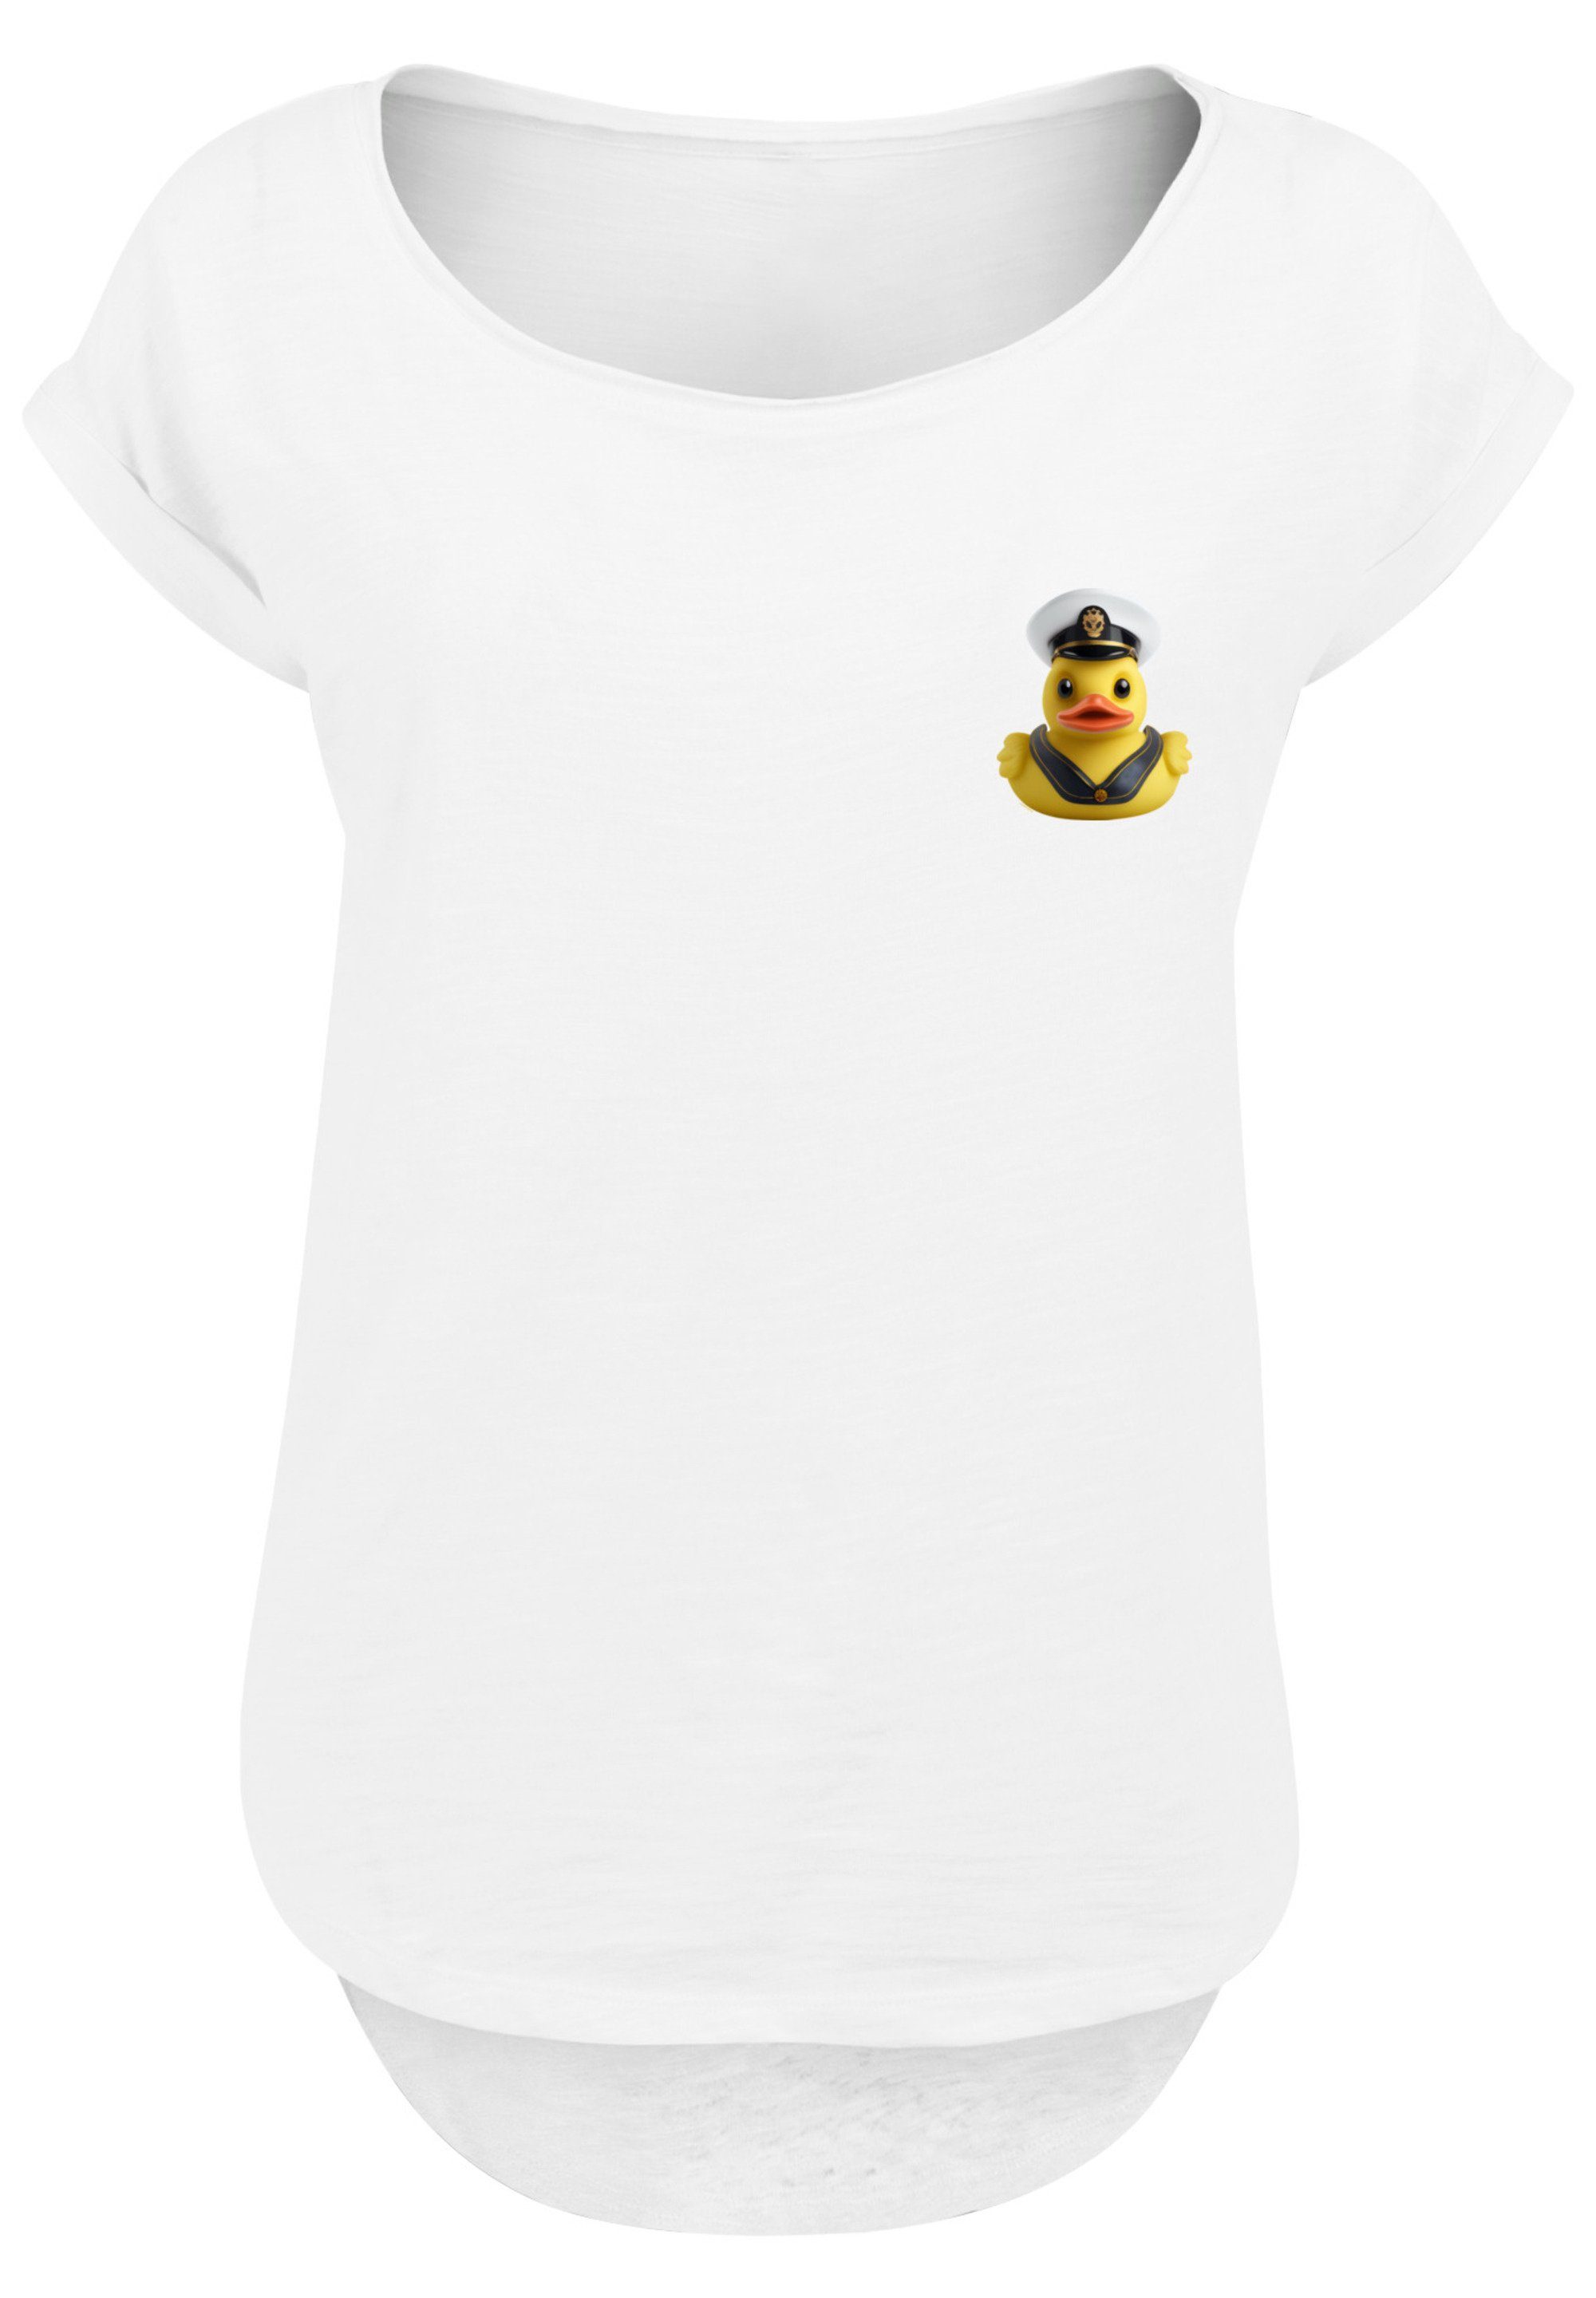 Sehr T-Shirt Long Captain weicher Print, F4NT4STIC Tragekomfort mit Rubber Baumwollstoff hohem Duck